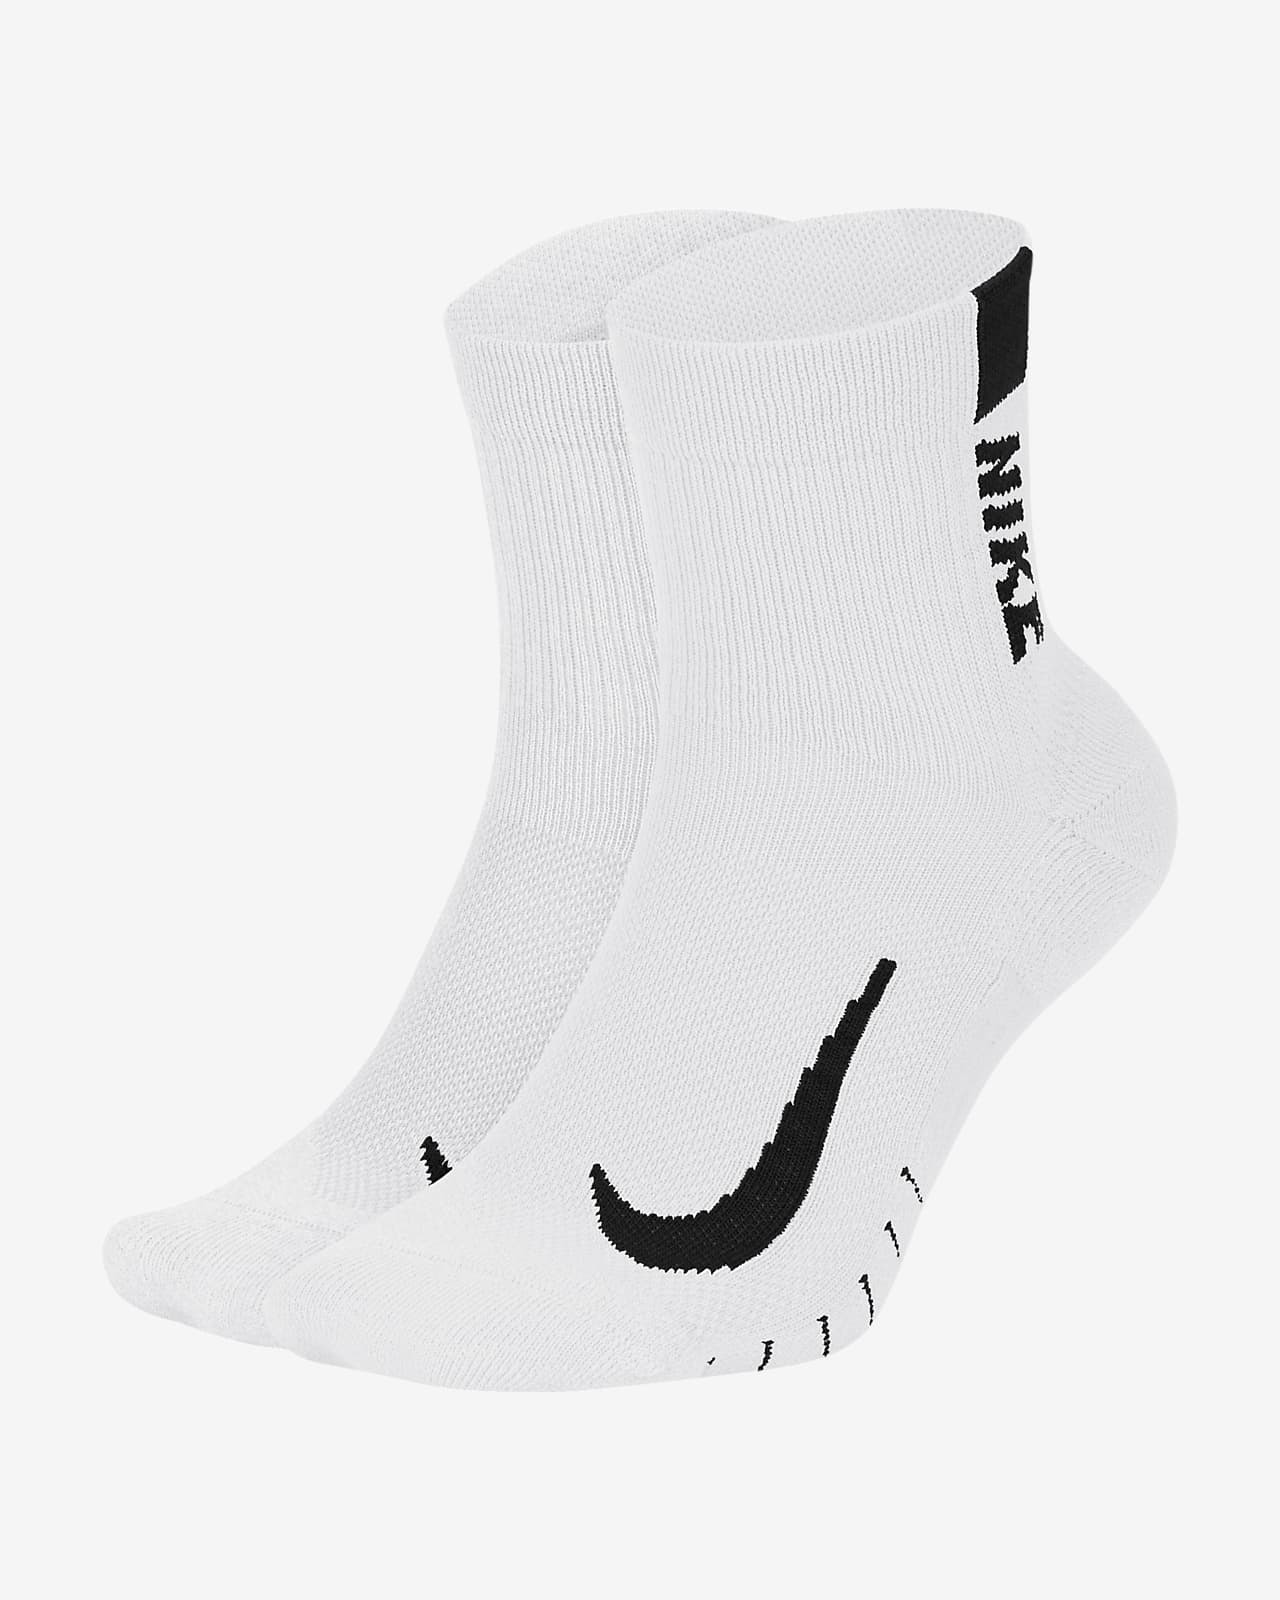 Nike Multiplier Running Ankle Socks (2 